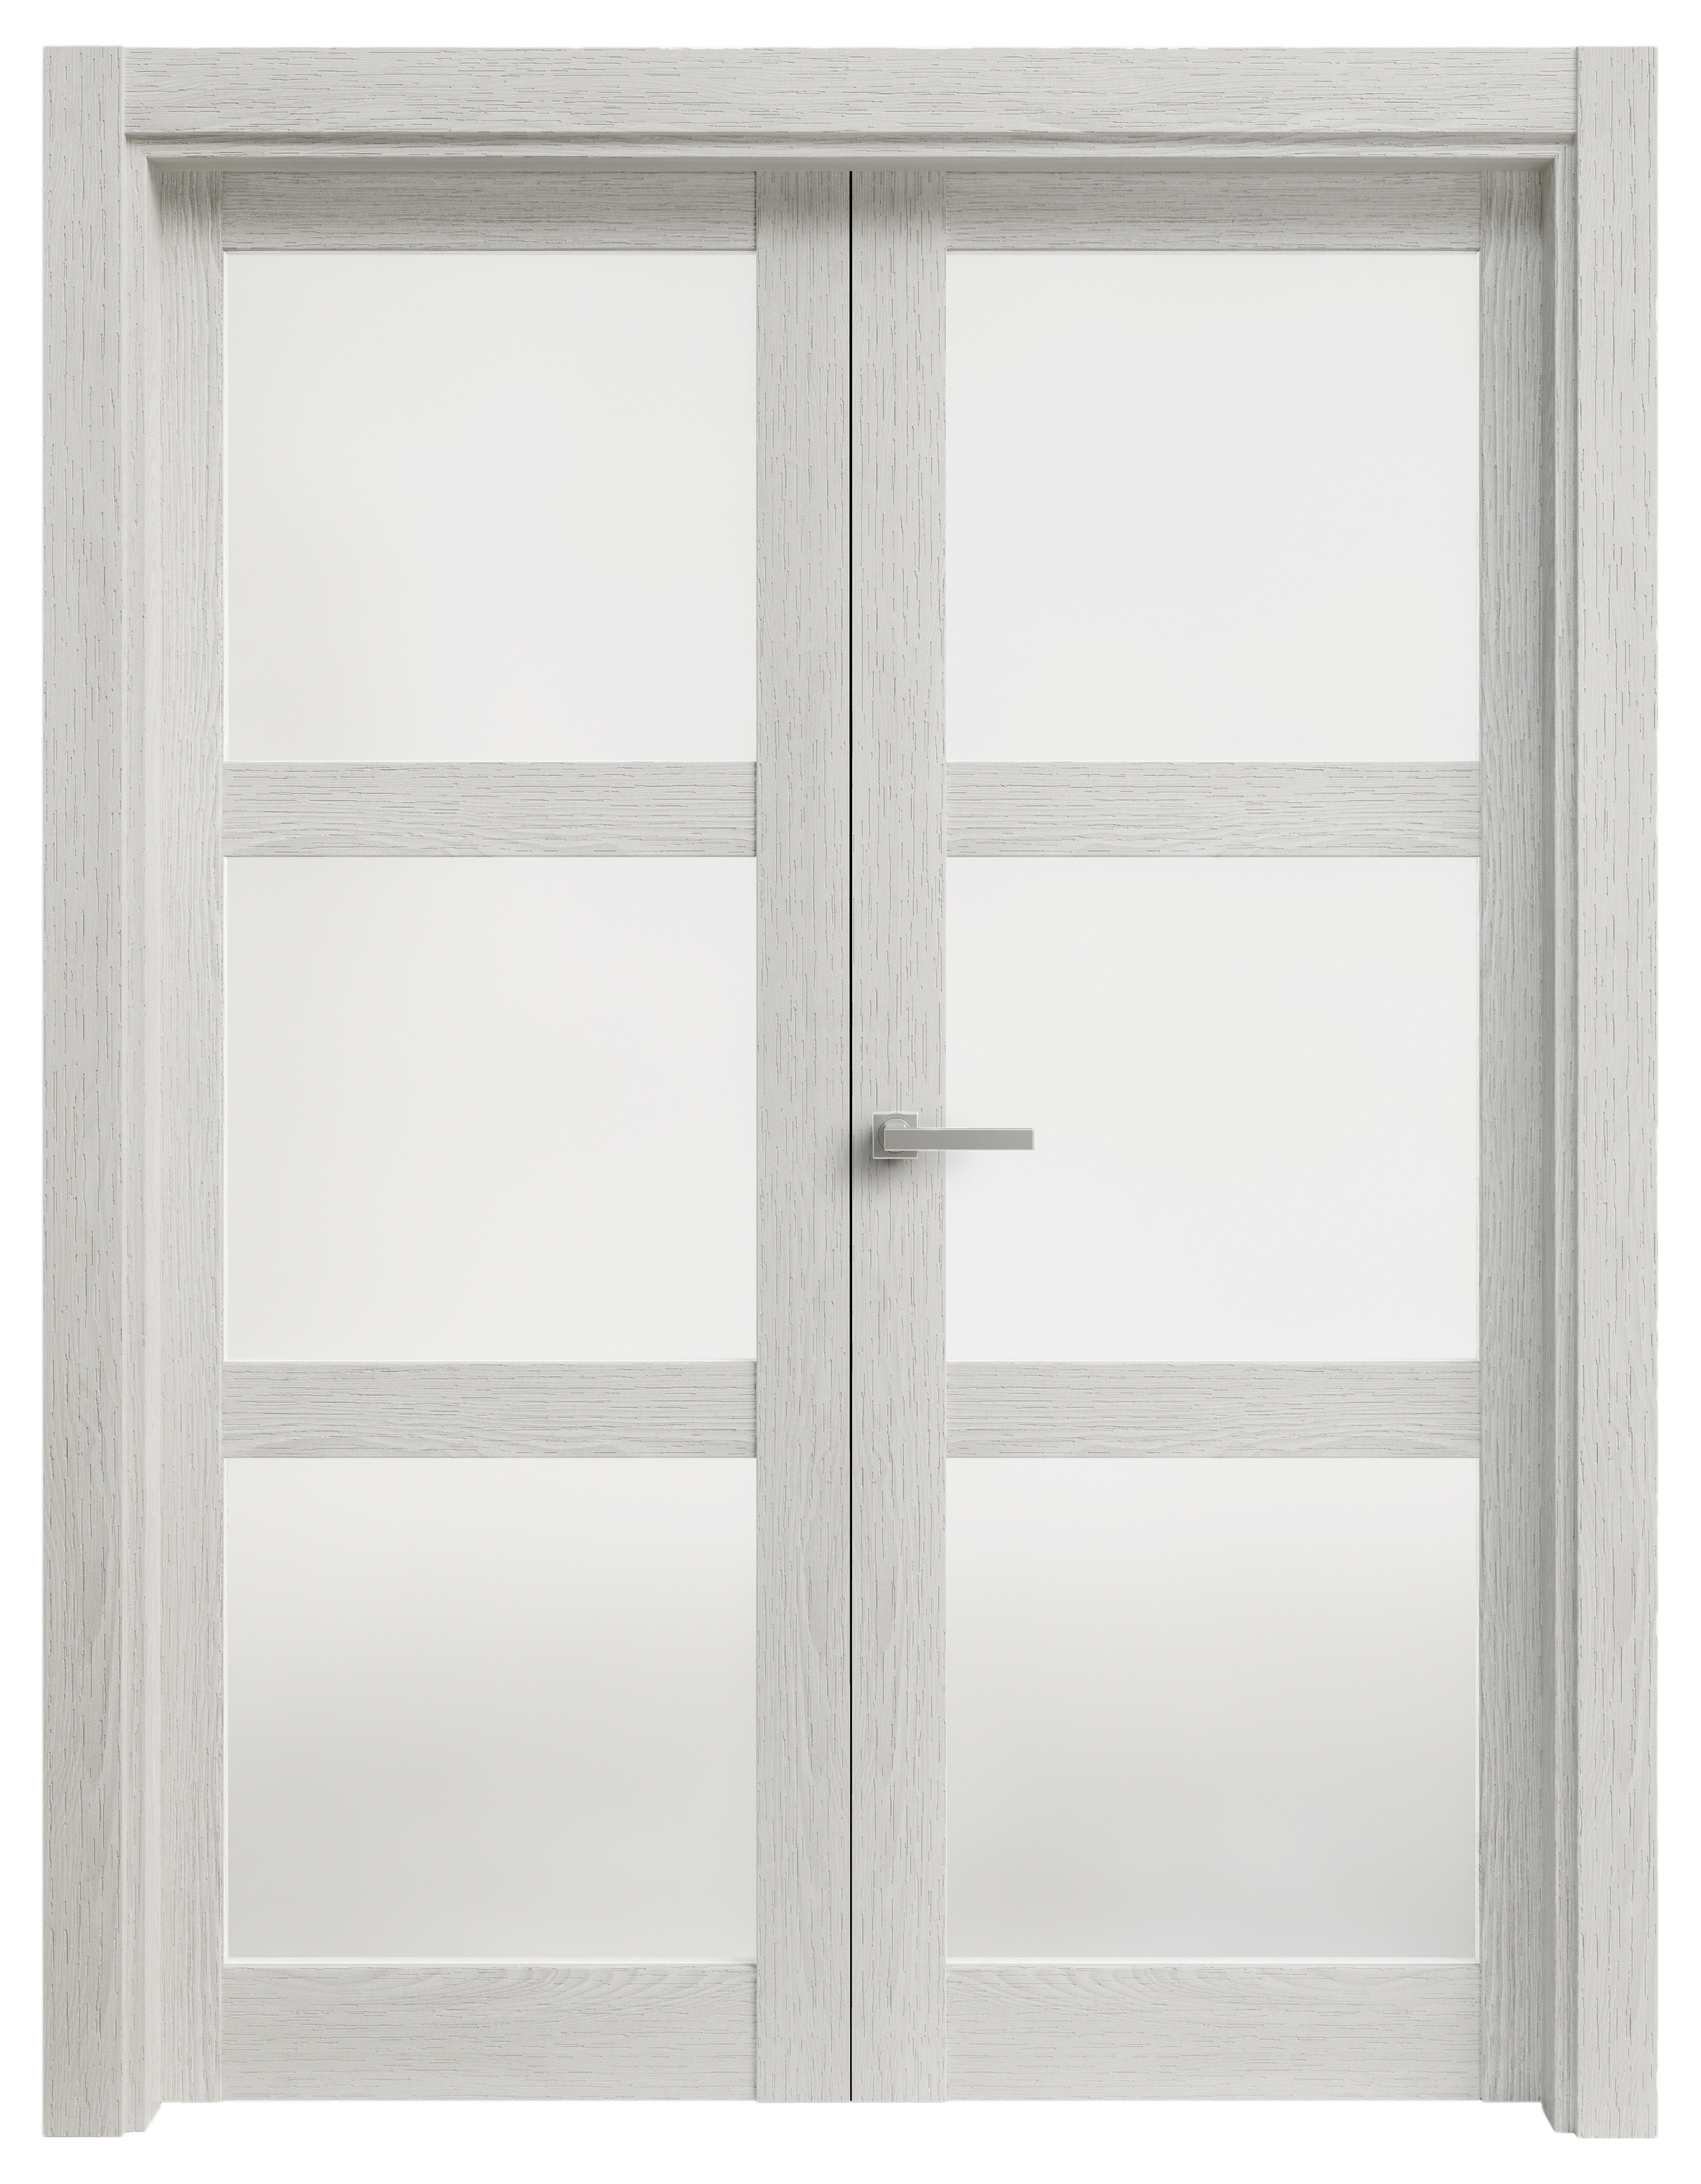 Puerta abatible moscu blanca line plus con cristal blanco izquierda de 165 c